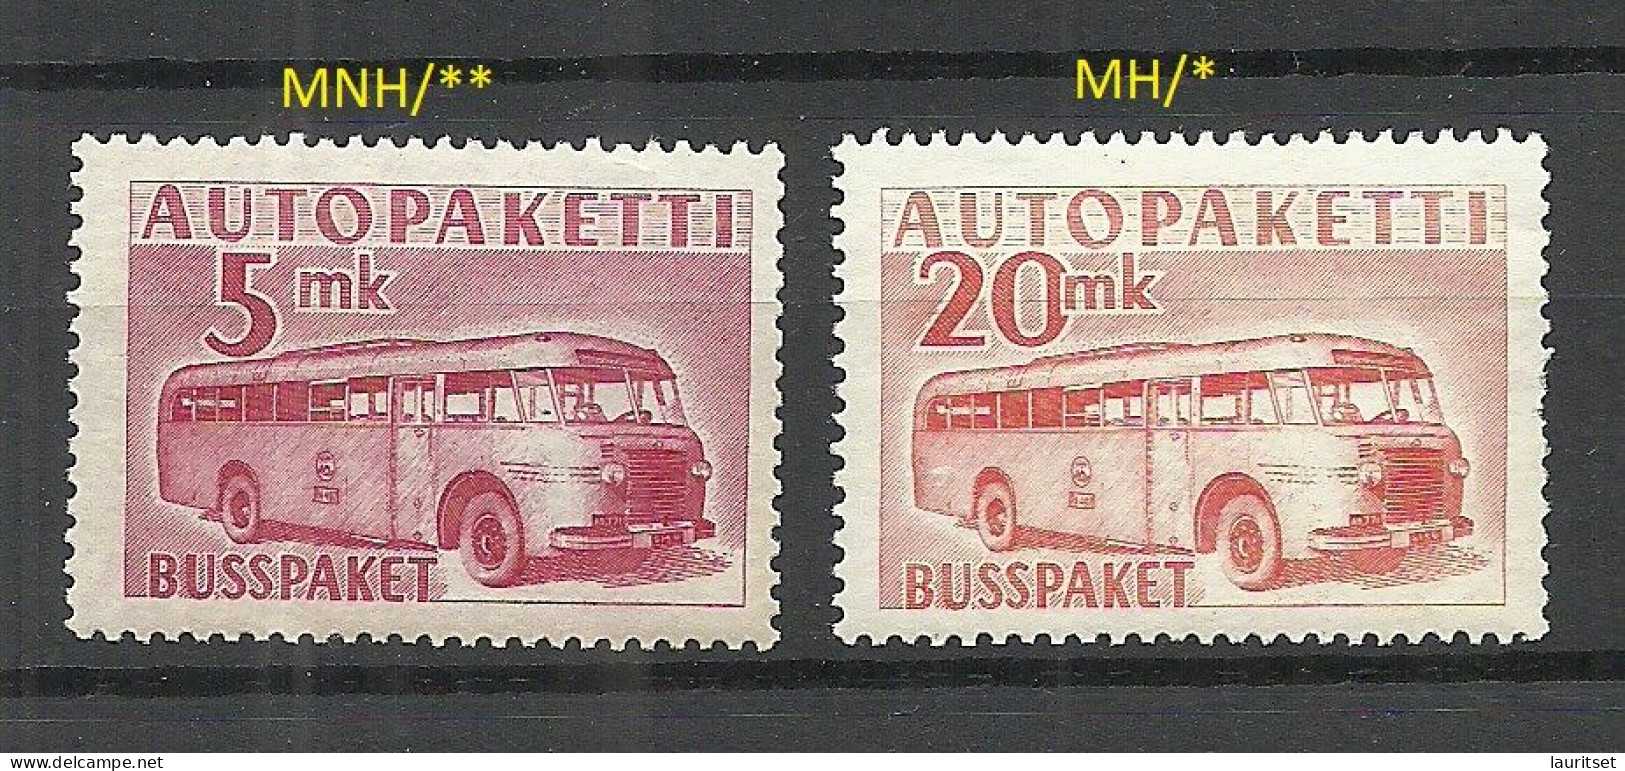 FINLAND FINNLAND 1955/1958 Auto-Paketmarken O Bus Omnibus Packet Stamps Michel 6 - 7 MNH/MH - Paketmarken